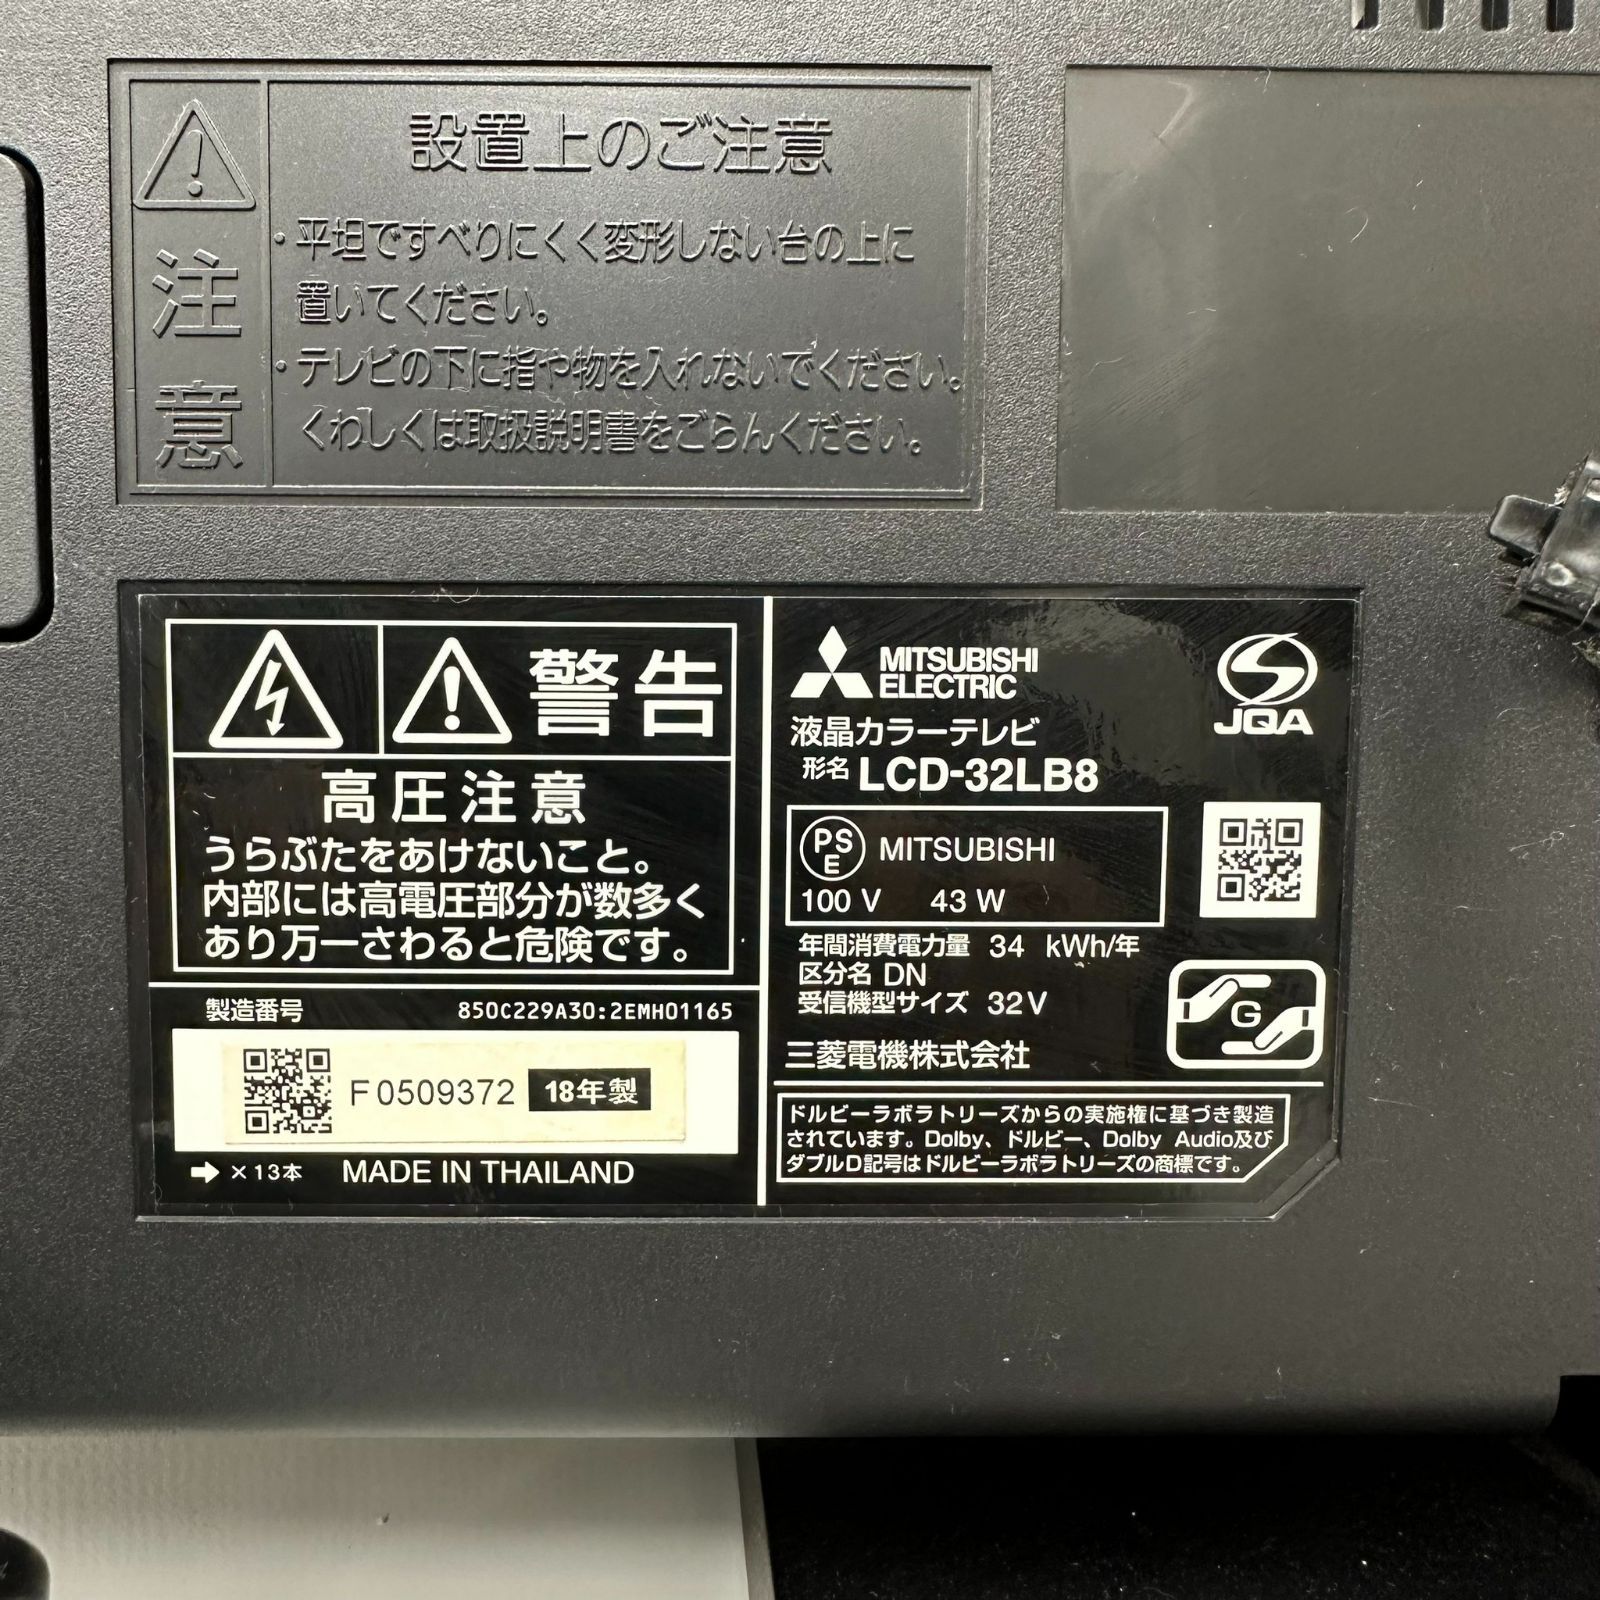 三菱 32型液晶テレビ REAL LCD-32LB8 - リサイクルショップARISOU浅草